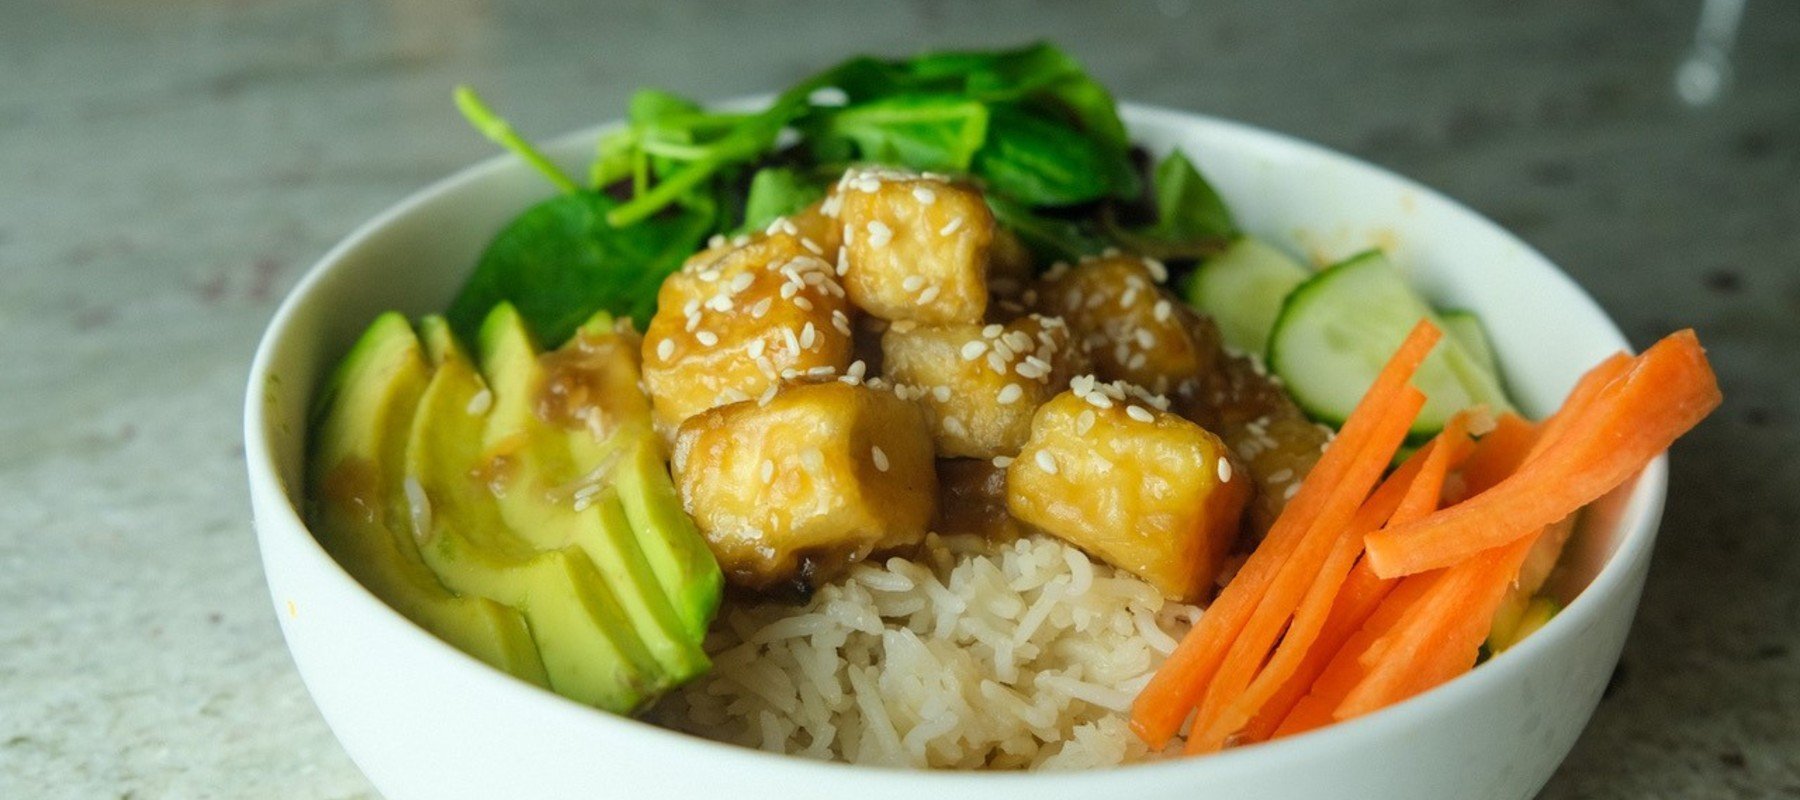 Křupavé Teriyaki tofu s rýží | Vegan meal prep